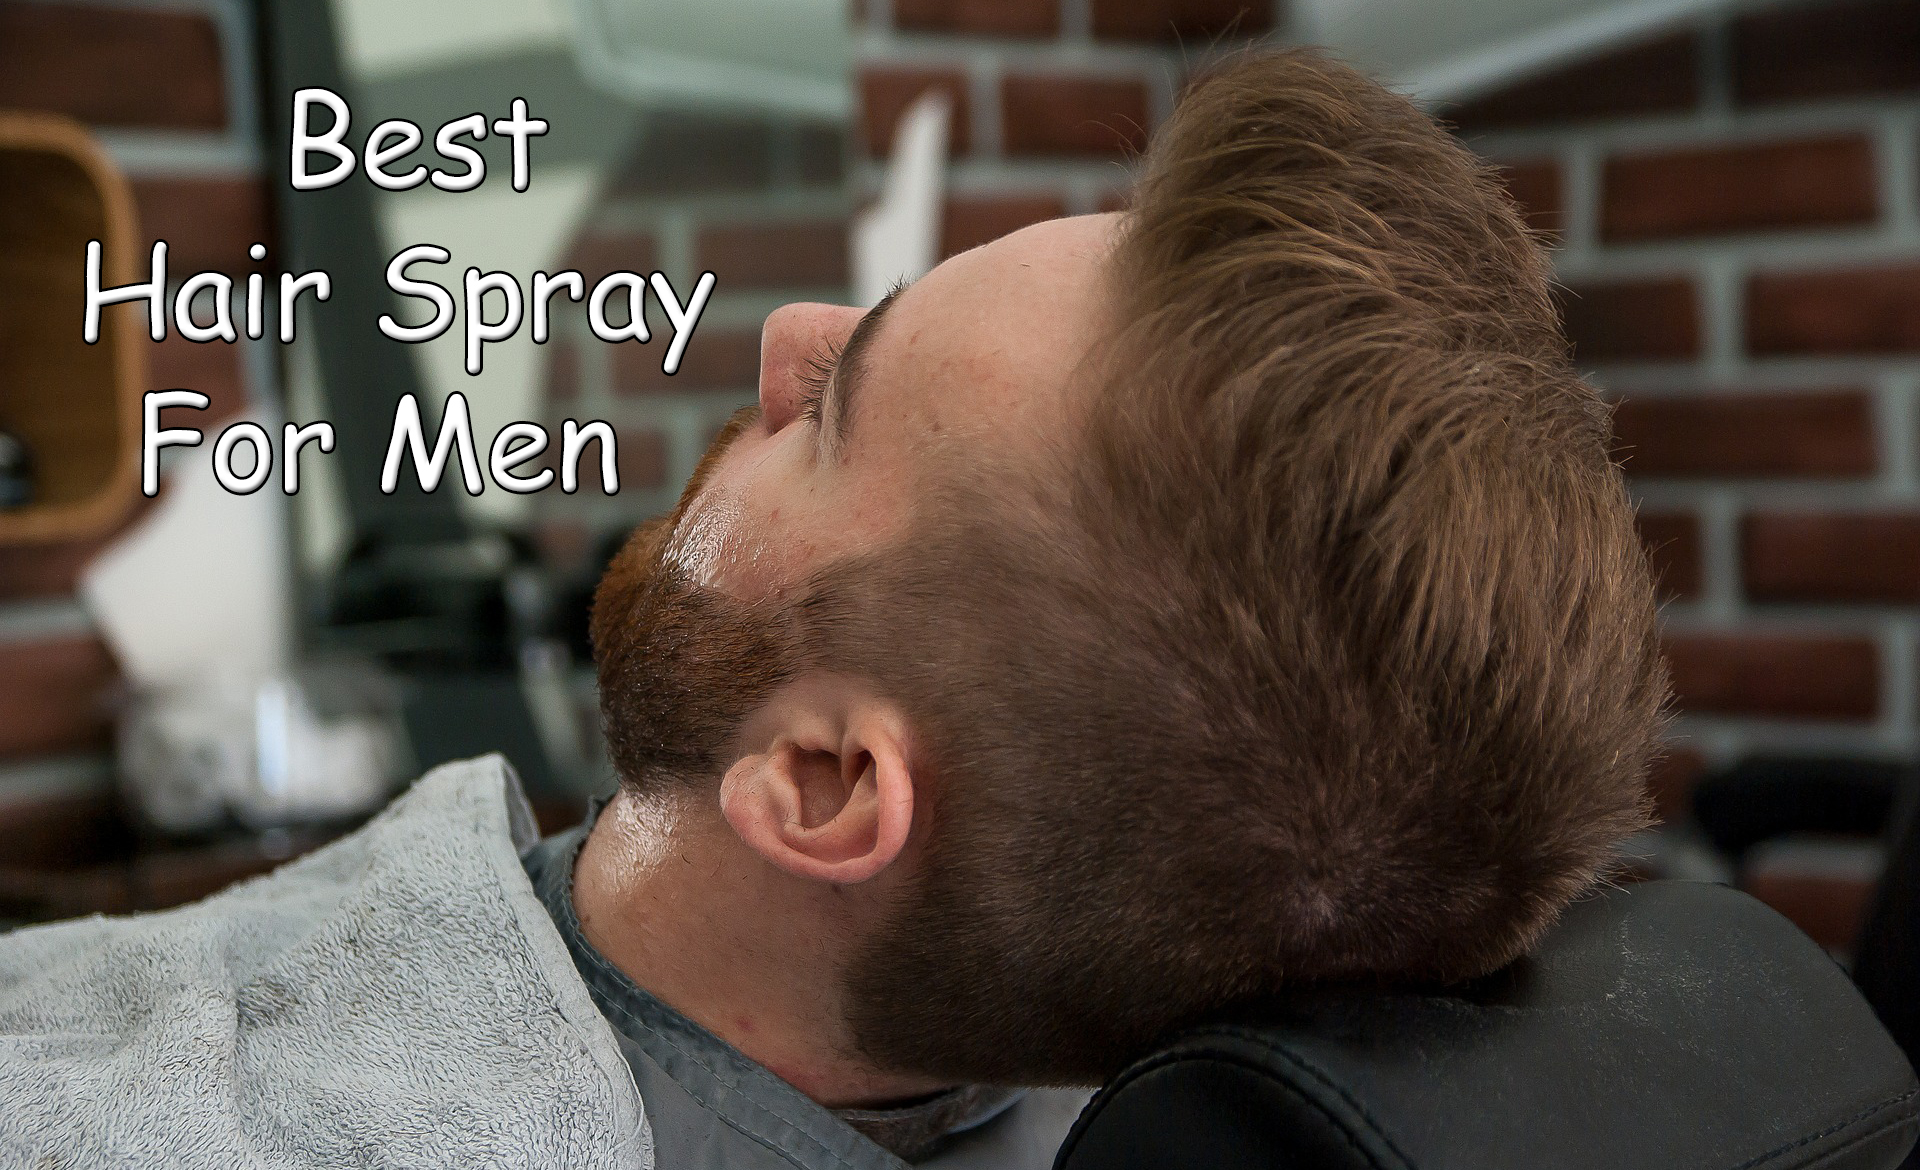 Best Hair Spray For Men